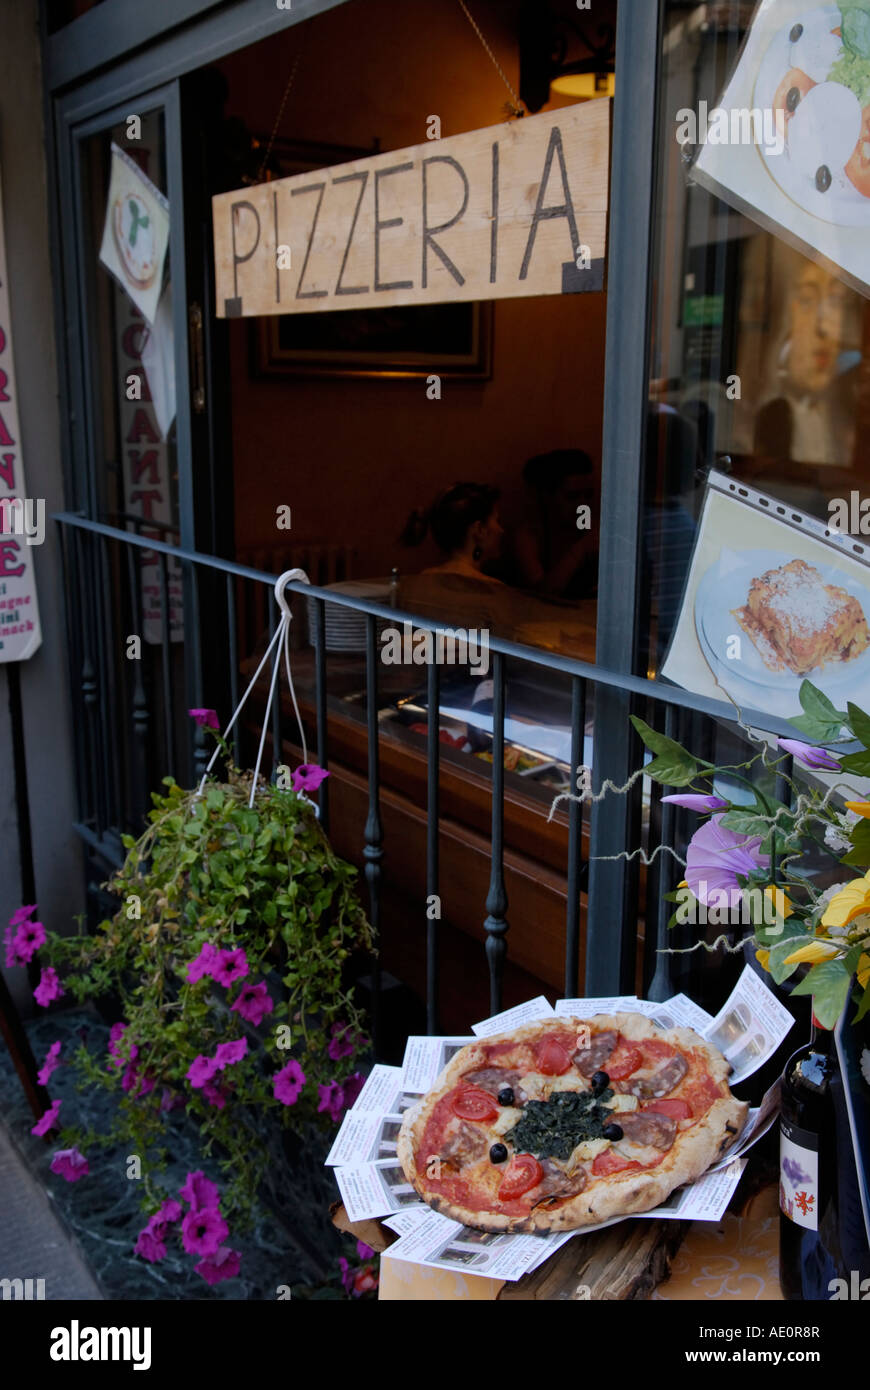 Pizzeria, Florence, Italy. Stock Photo